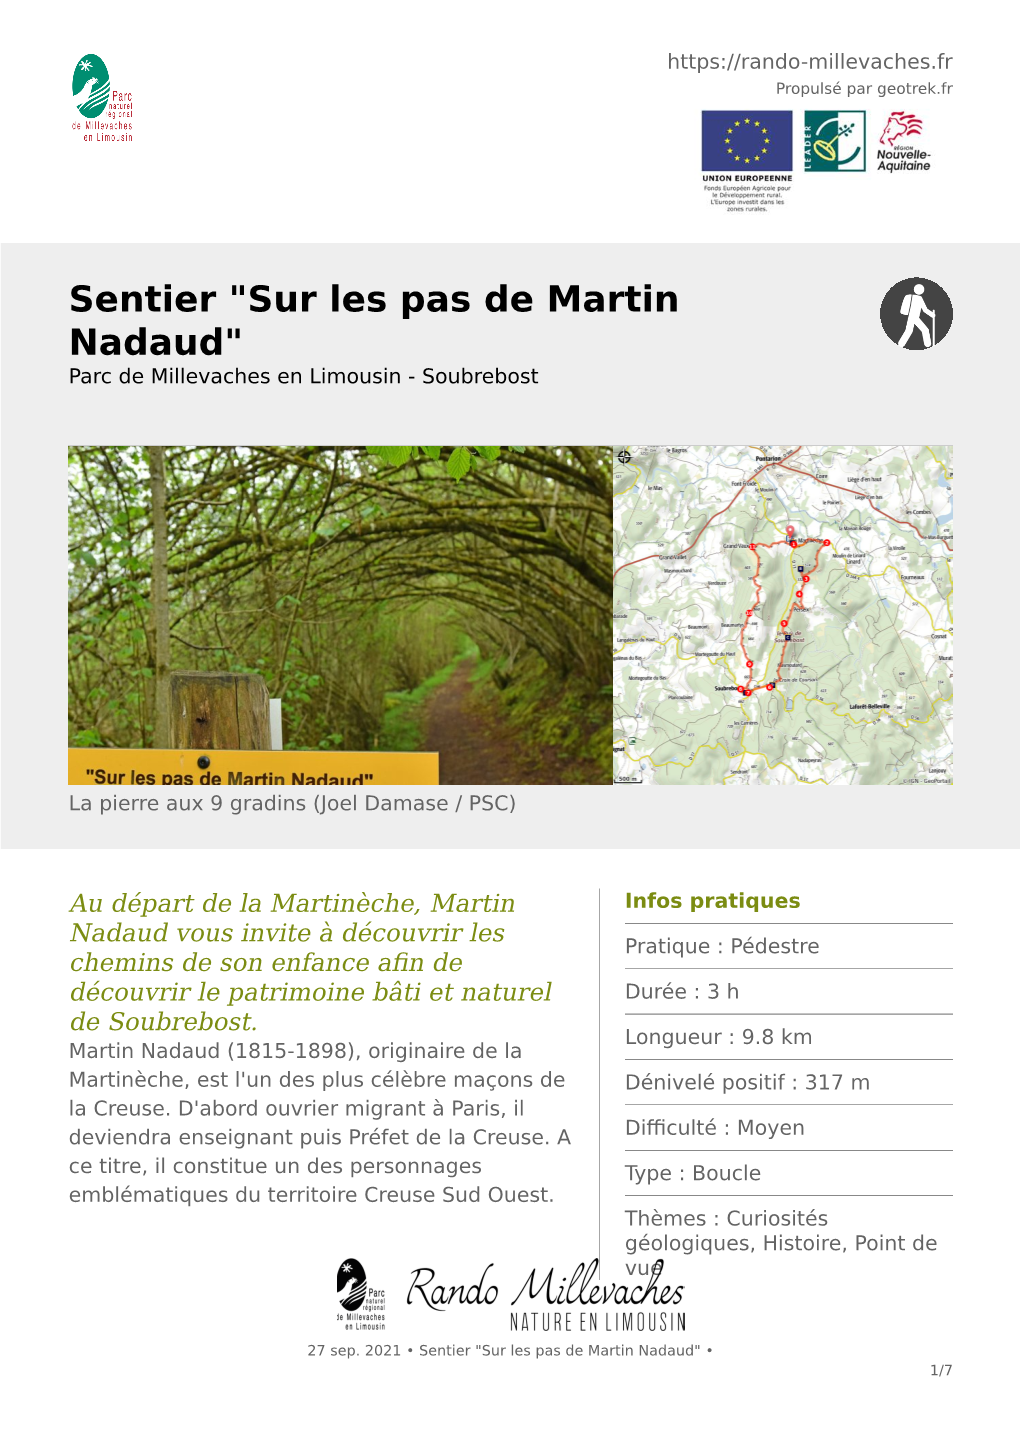 Sur Les Pas De Martin Nadaud" Parc De Millevaches En Limousin - Soubrebost